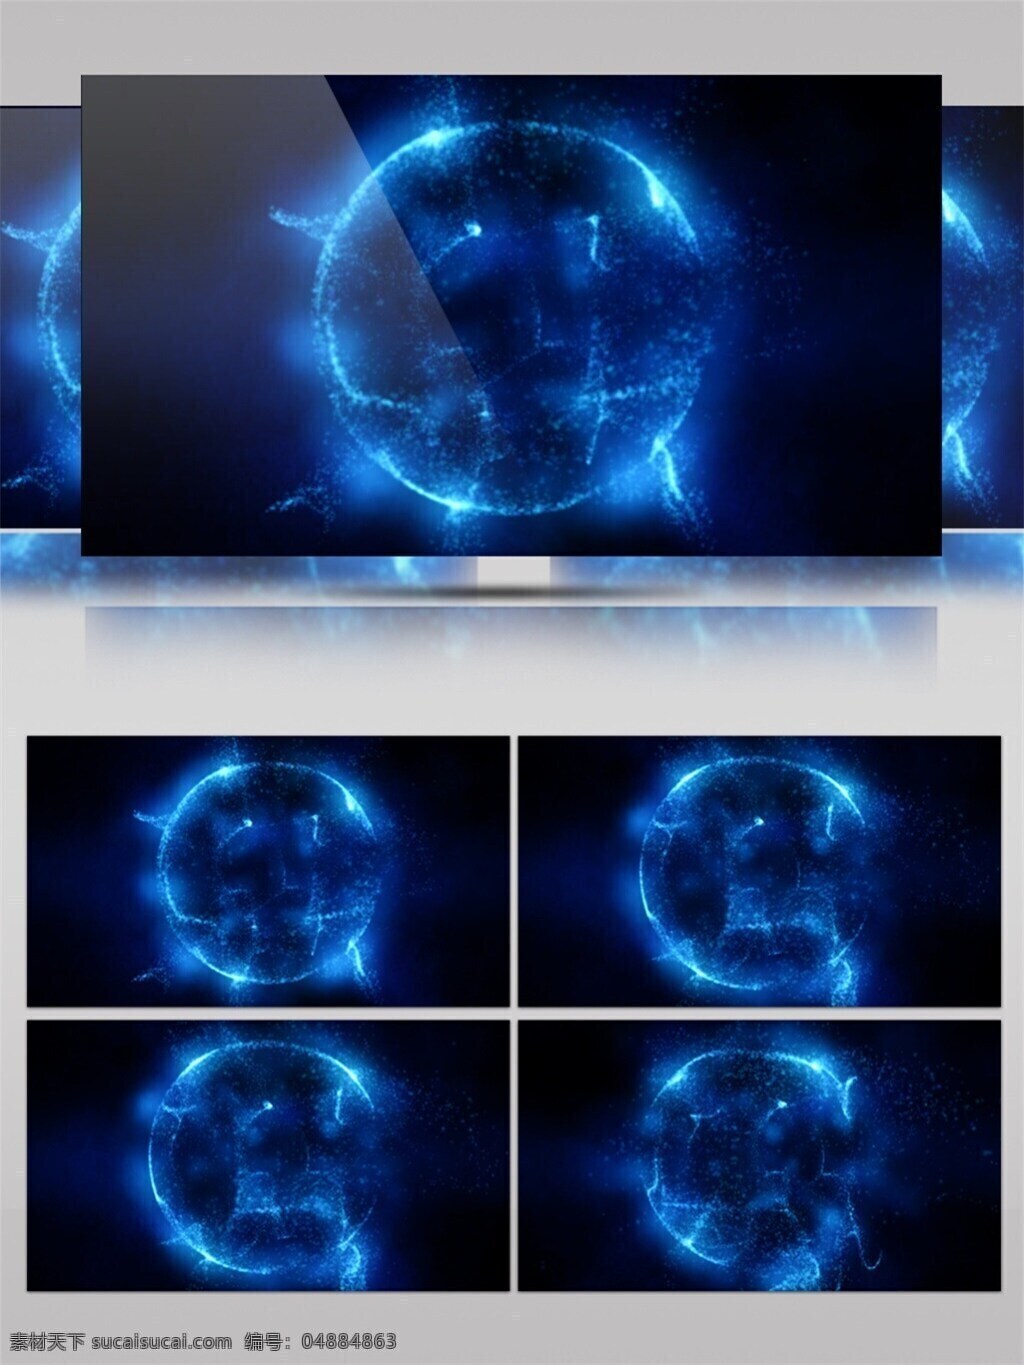 蓝色 星球 高清 视频 3d视频素材 高清视频素材 蓝色球体 迷幻发光 特效视频素材